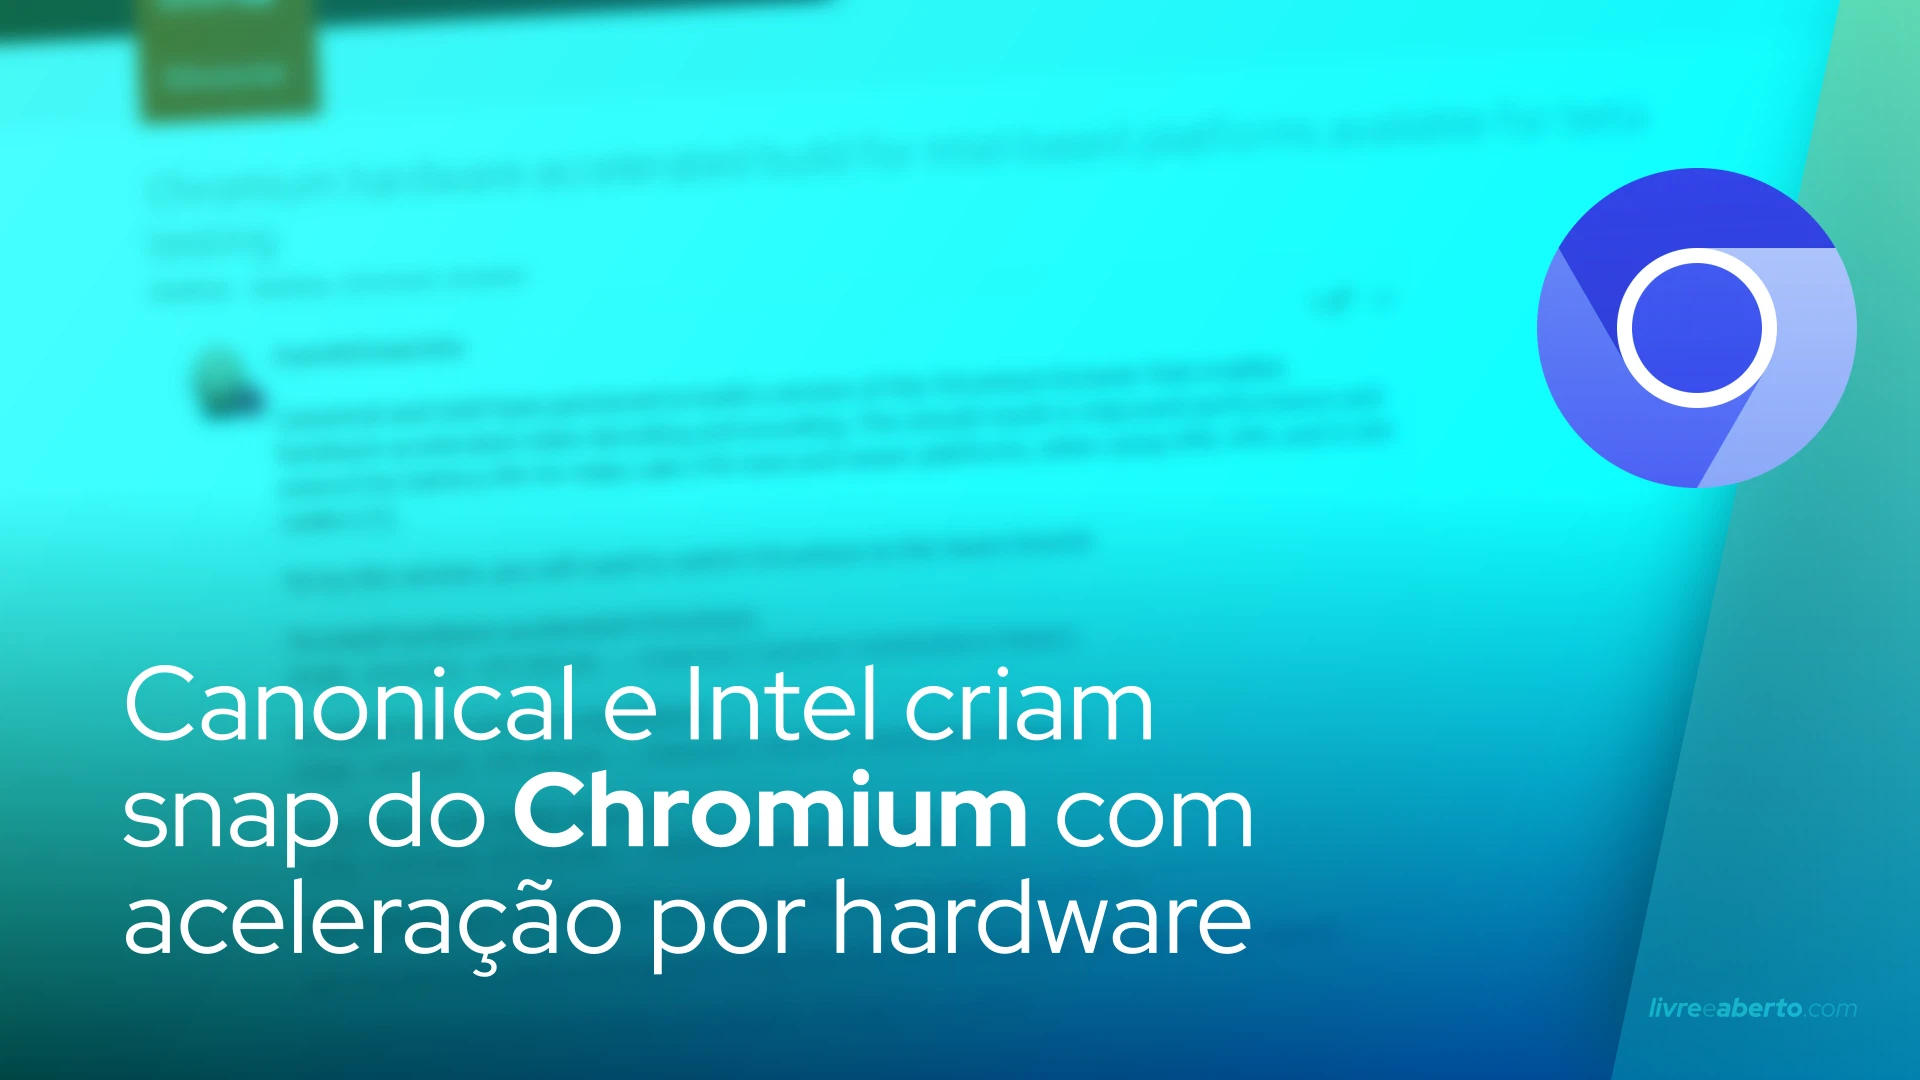 Canonical e Intel criam snap do Chromium com aceleração por hardware